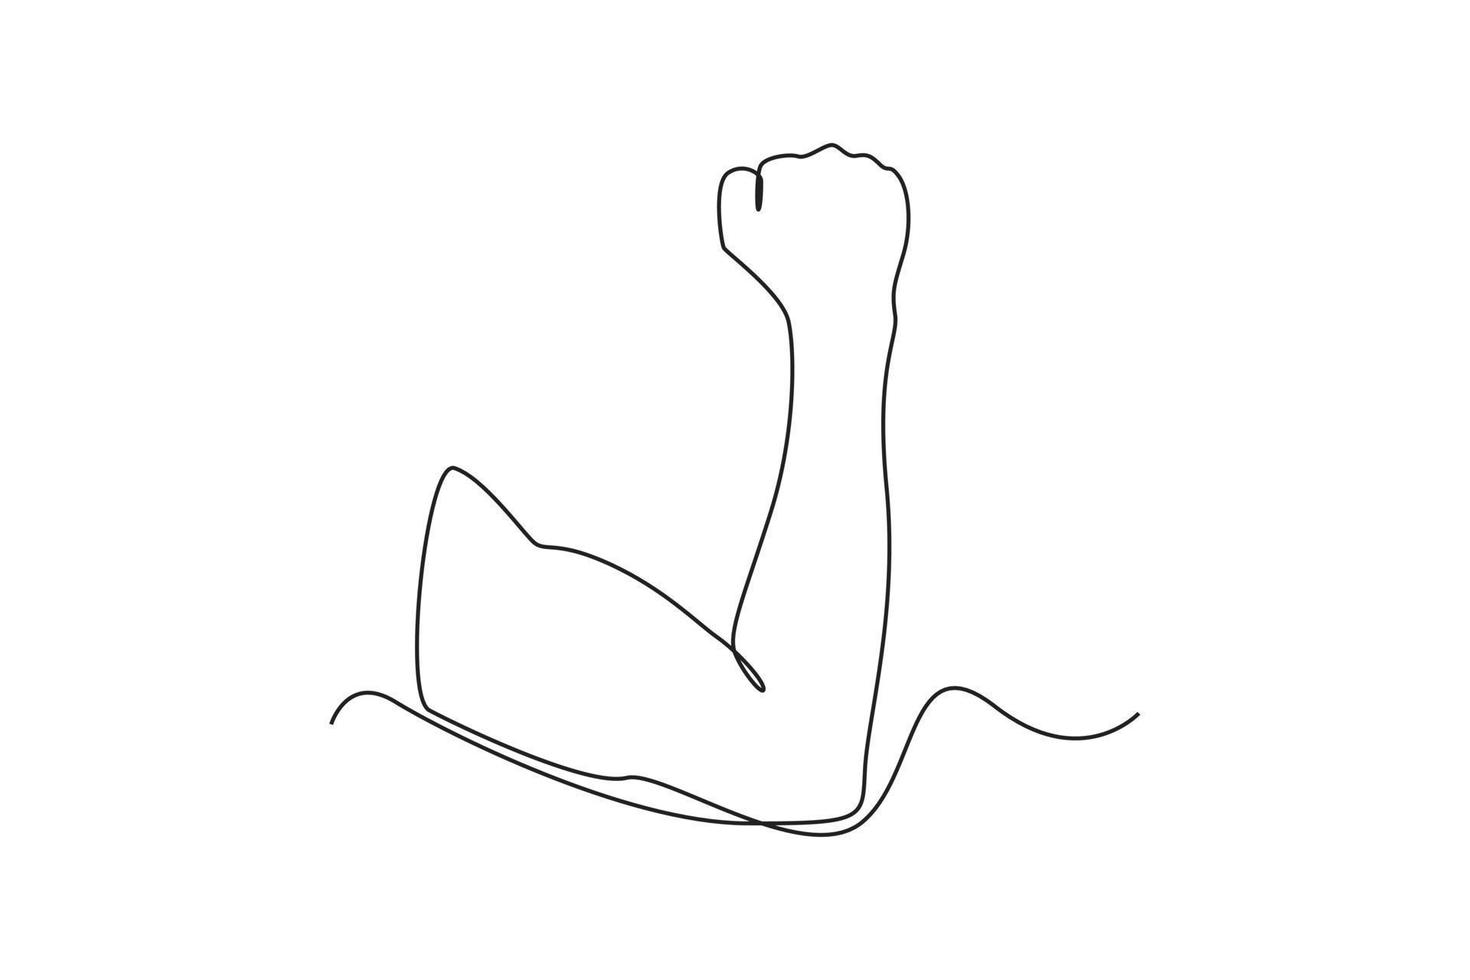 órgano de brazo de dibujo de una sola línea. concepto de órgano humano. ilustración de vector gráfico de diseño de dibujo de línea continua.